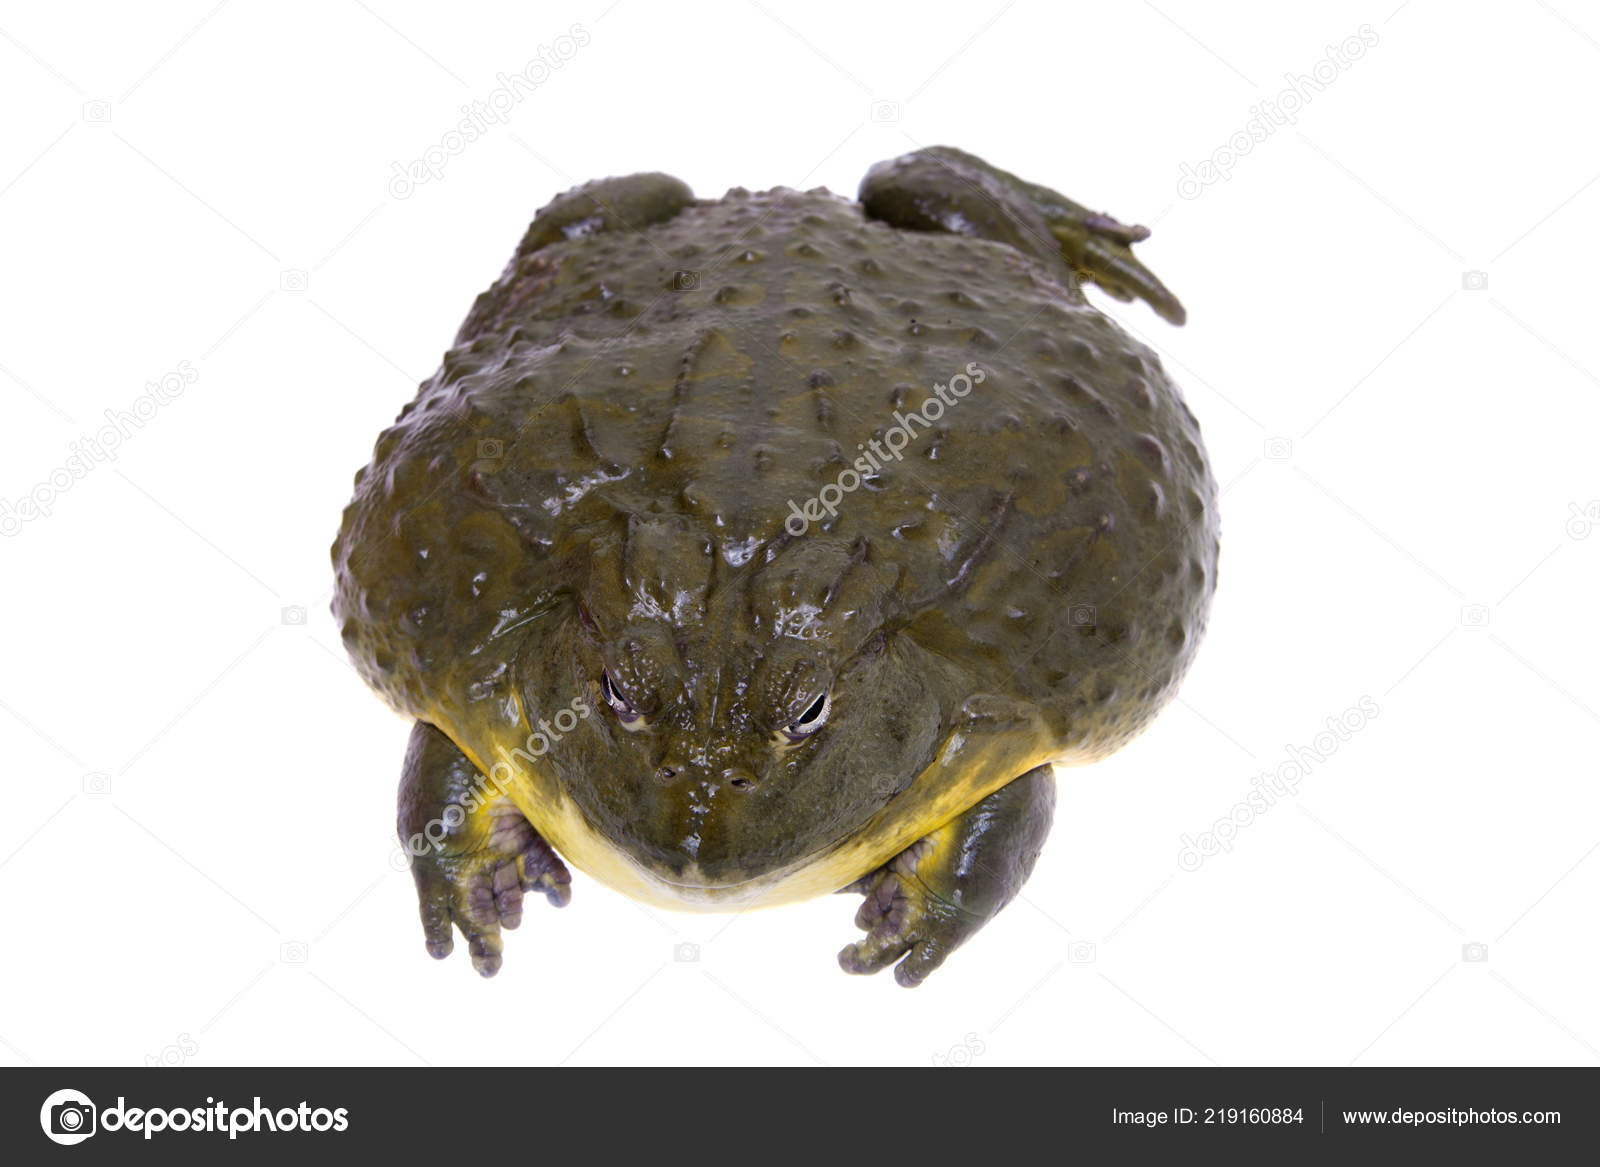 Amphibien frosch Stockfotos, lizenzfreie Amphibien frosch Bilder